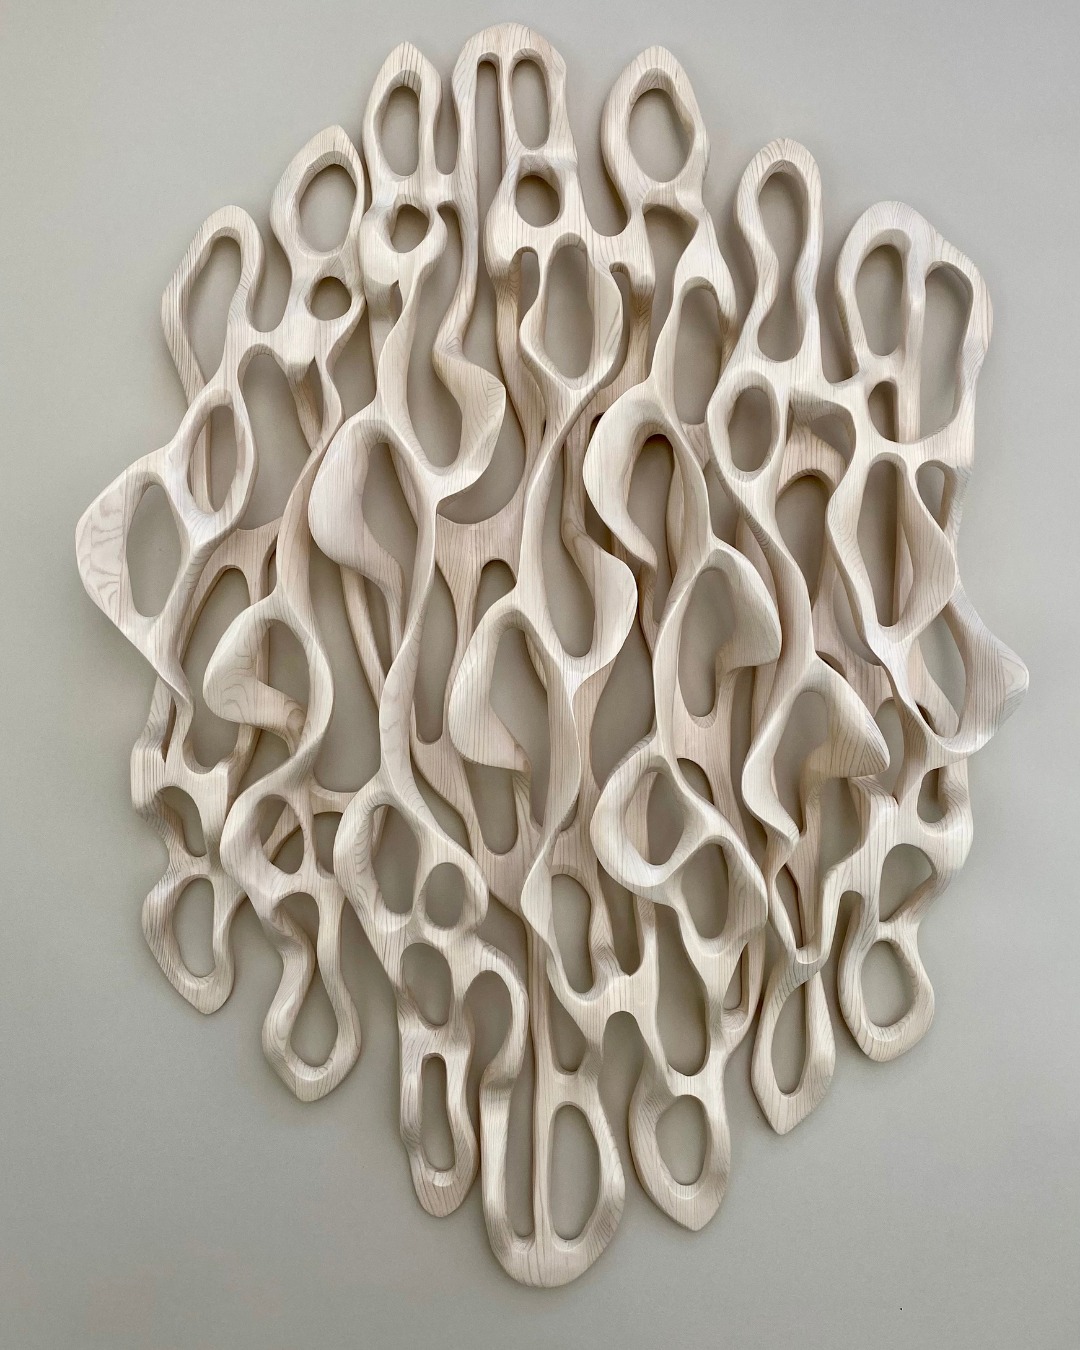 bone color wall art sculpture